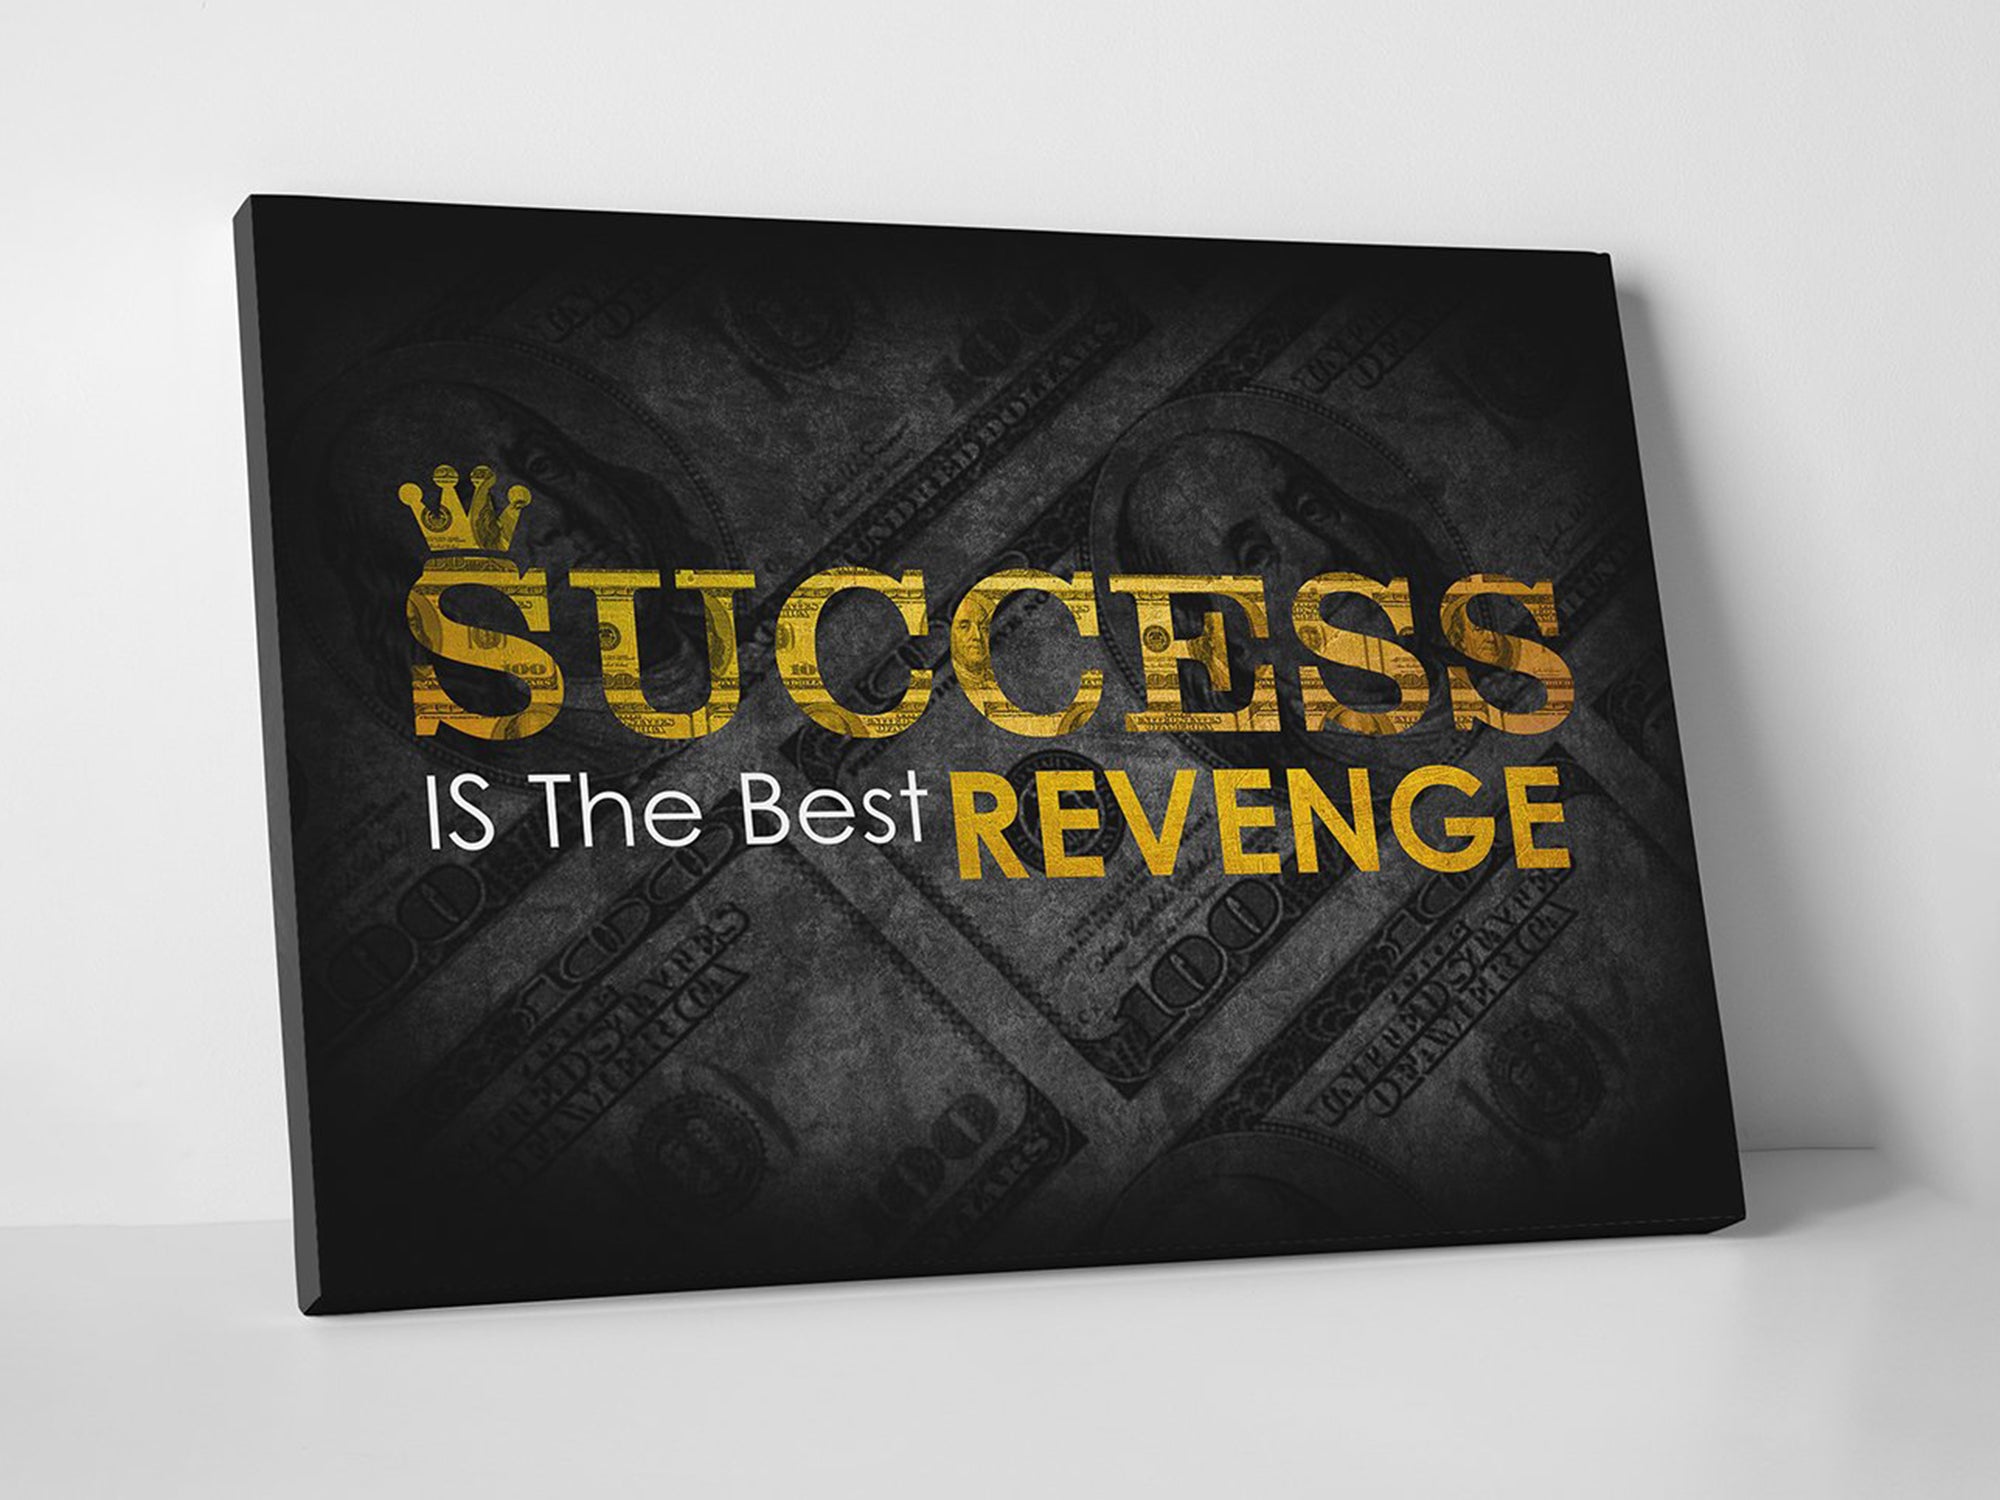 Success Is The Best  Revenge Canvas Art